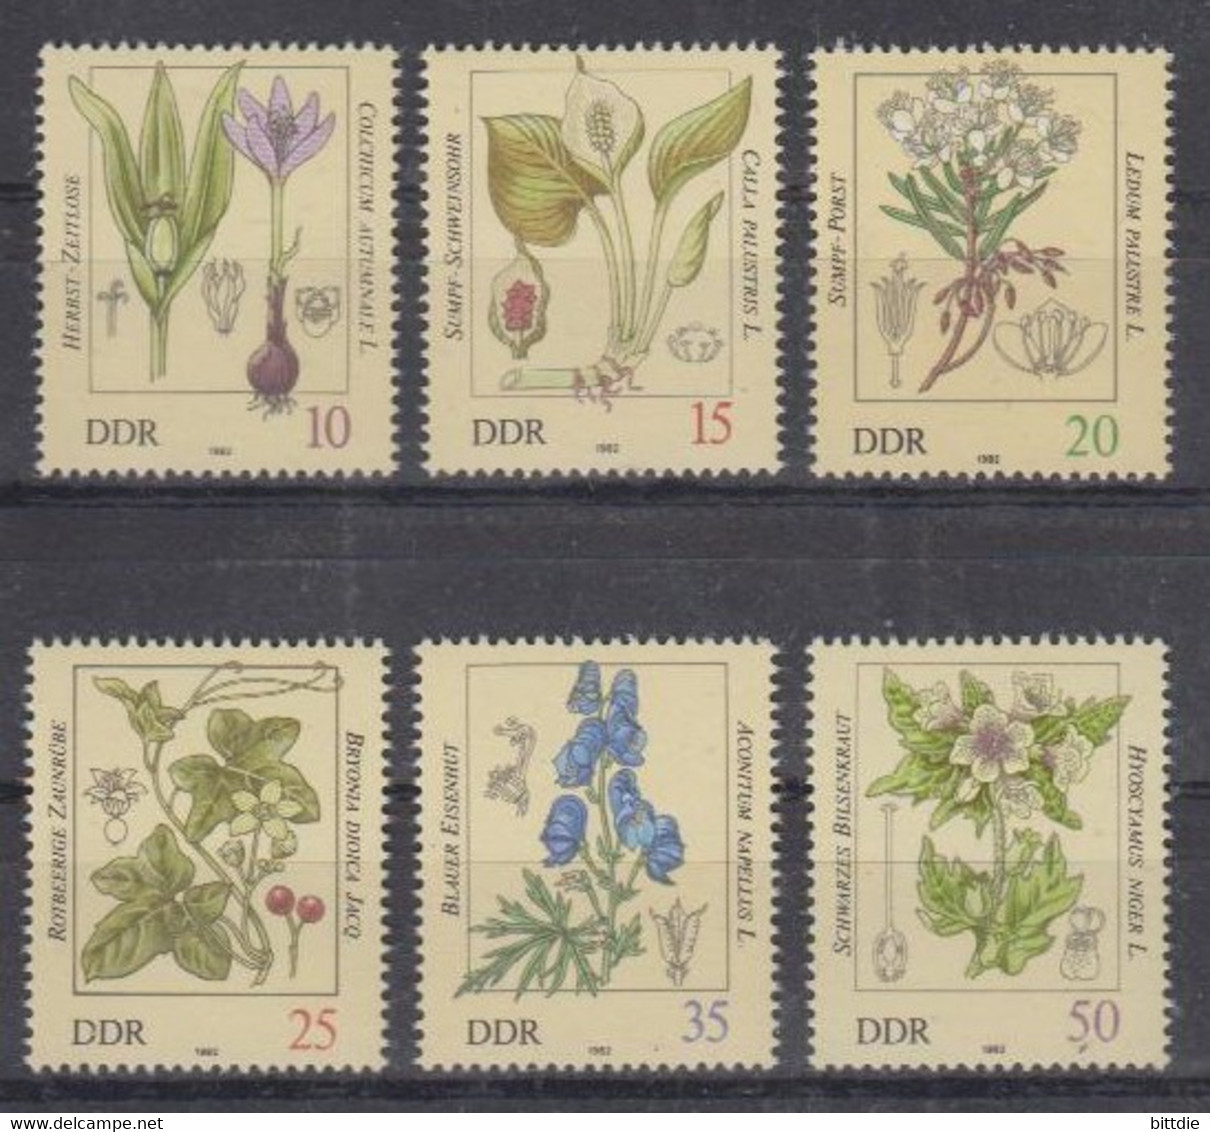 Giftpflanzen, DDR  2691/96 , Xx  (A6.0278) - Piante Velenose